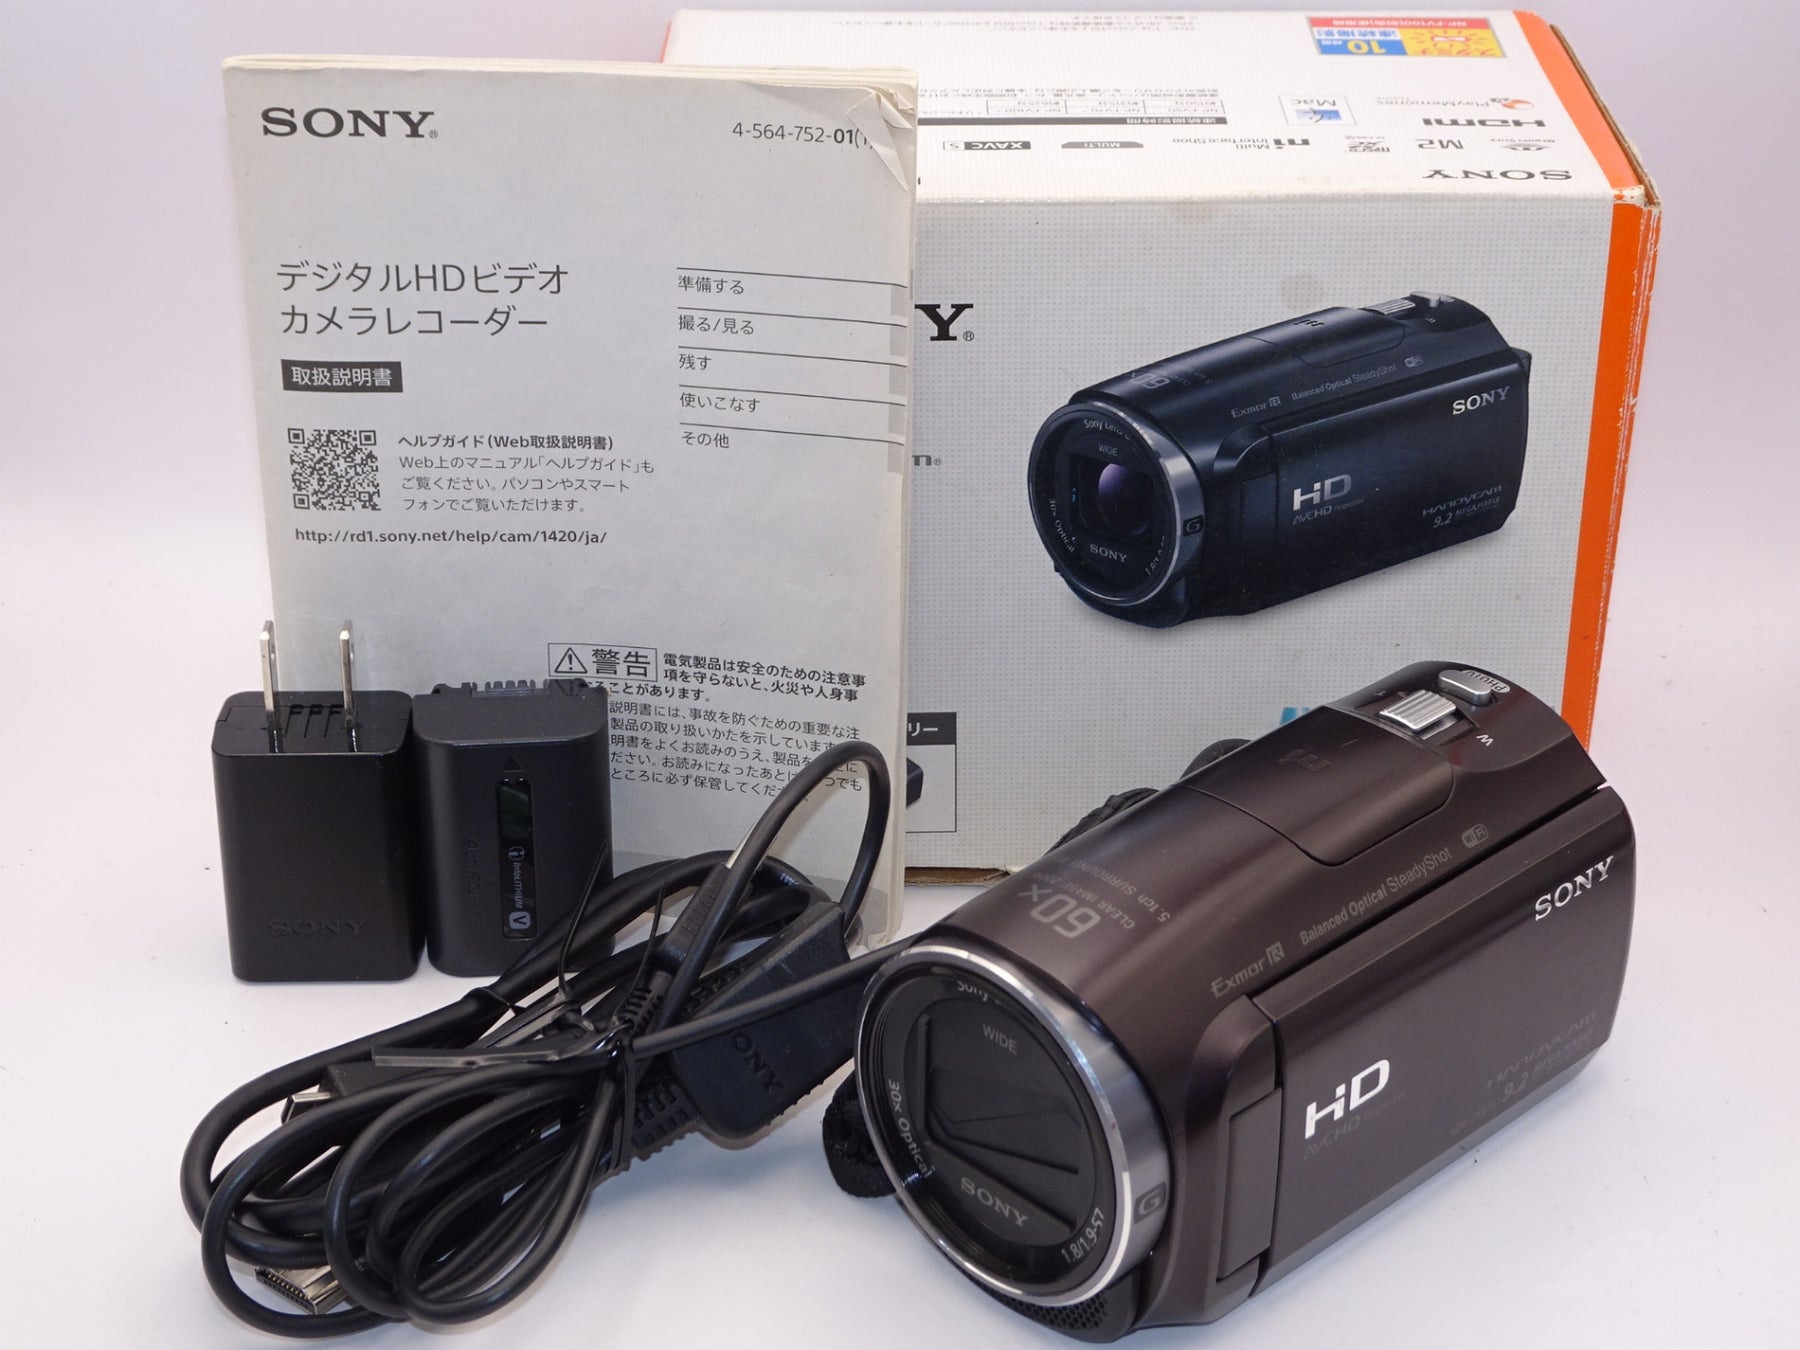 外観並級】SONY HDビデオカメラ Handycam HDR-CX670 ボルドーブラウン